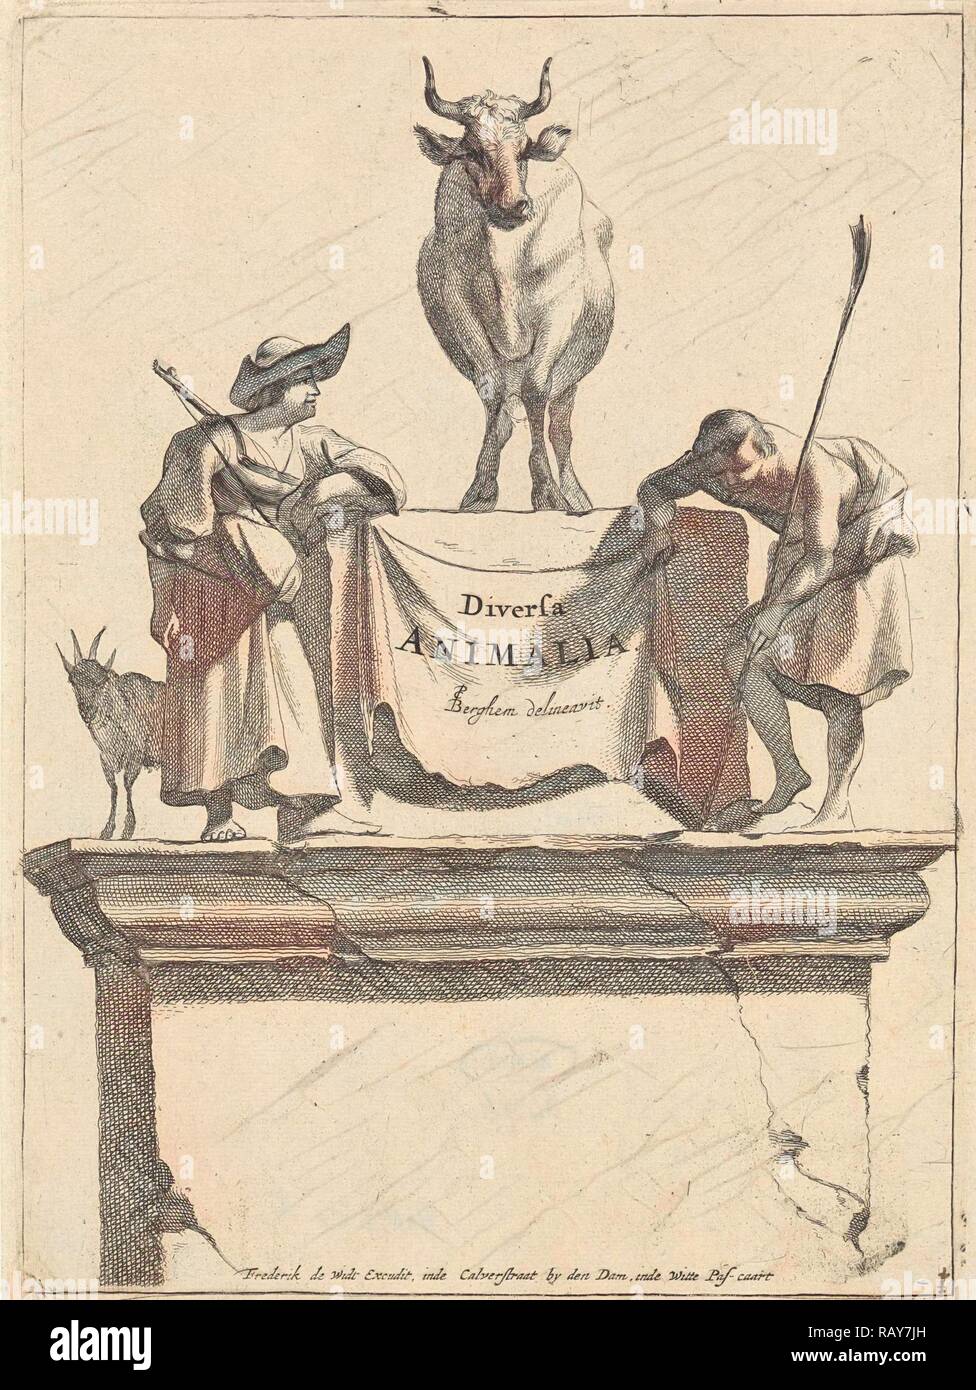 Title print for Diversa Animalia, Jan de Visscher, Frederik de Wit, 1643-1706. Reimagined by Gibon. Classic art with reimagined Stock Photo